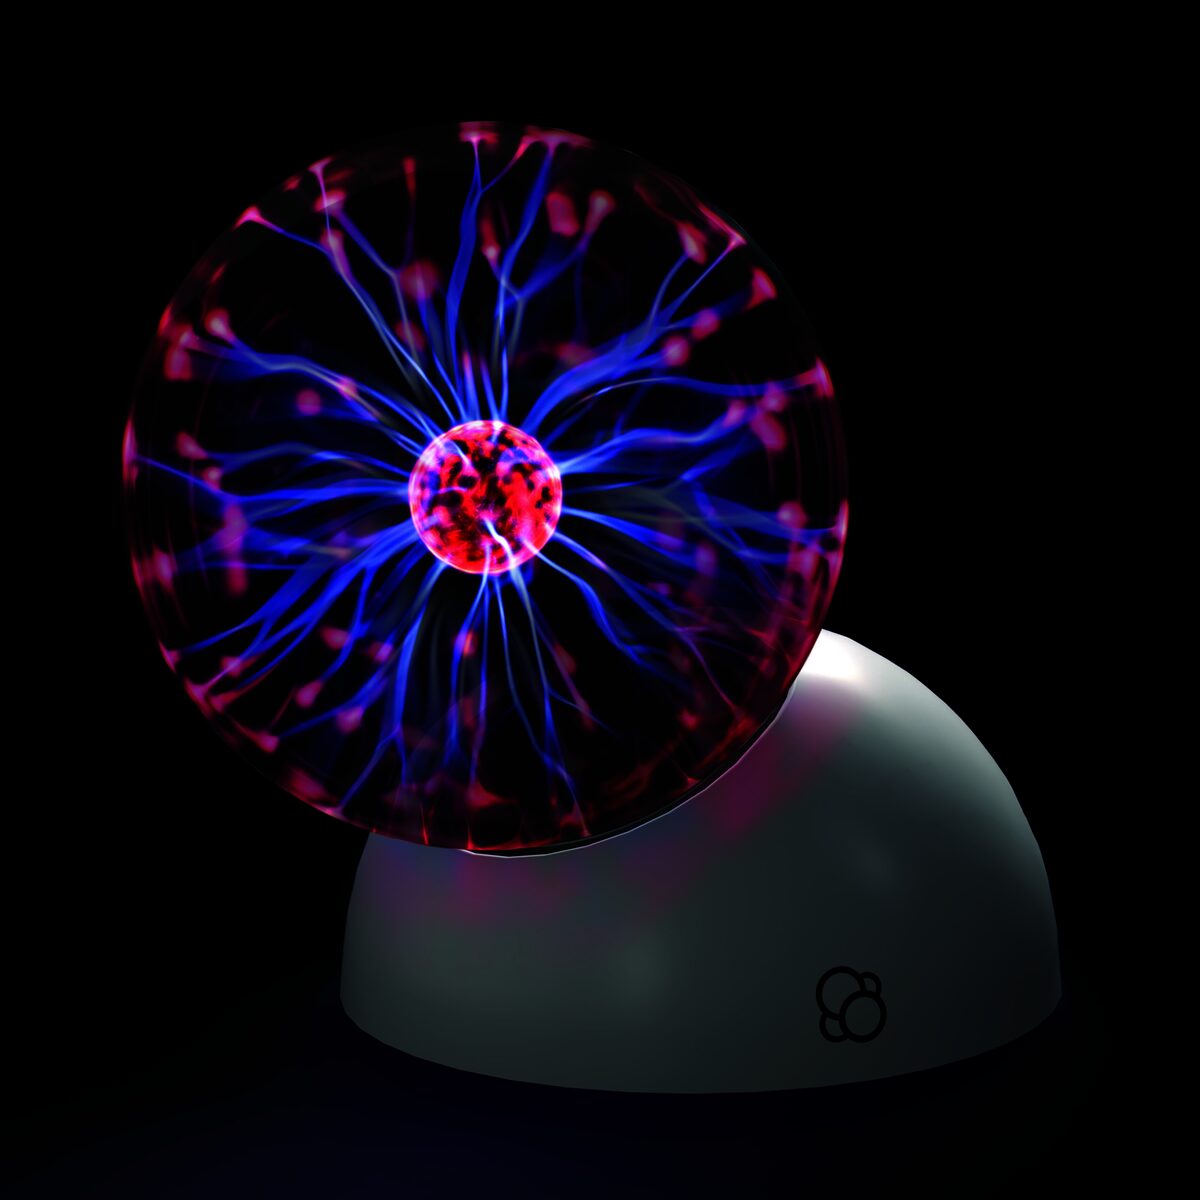 Plasma Ball additional image